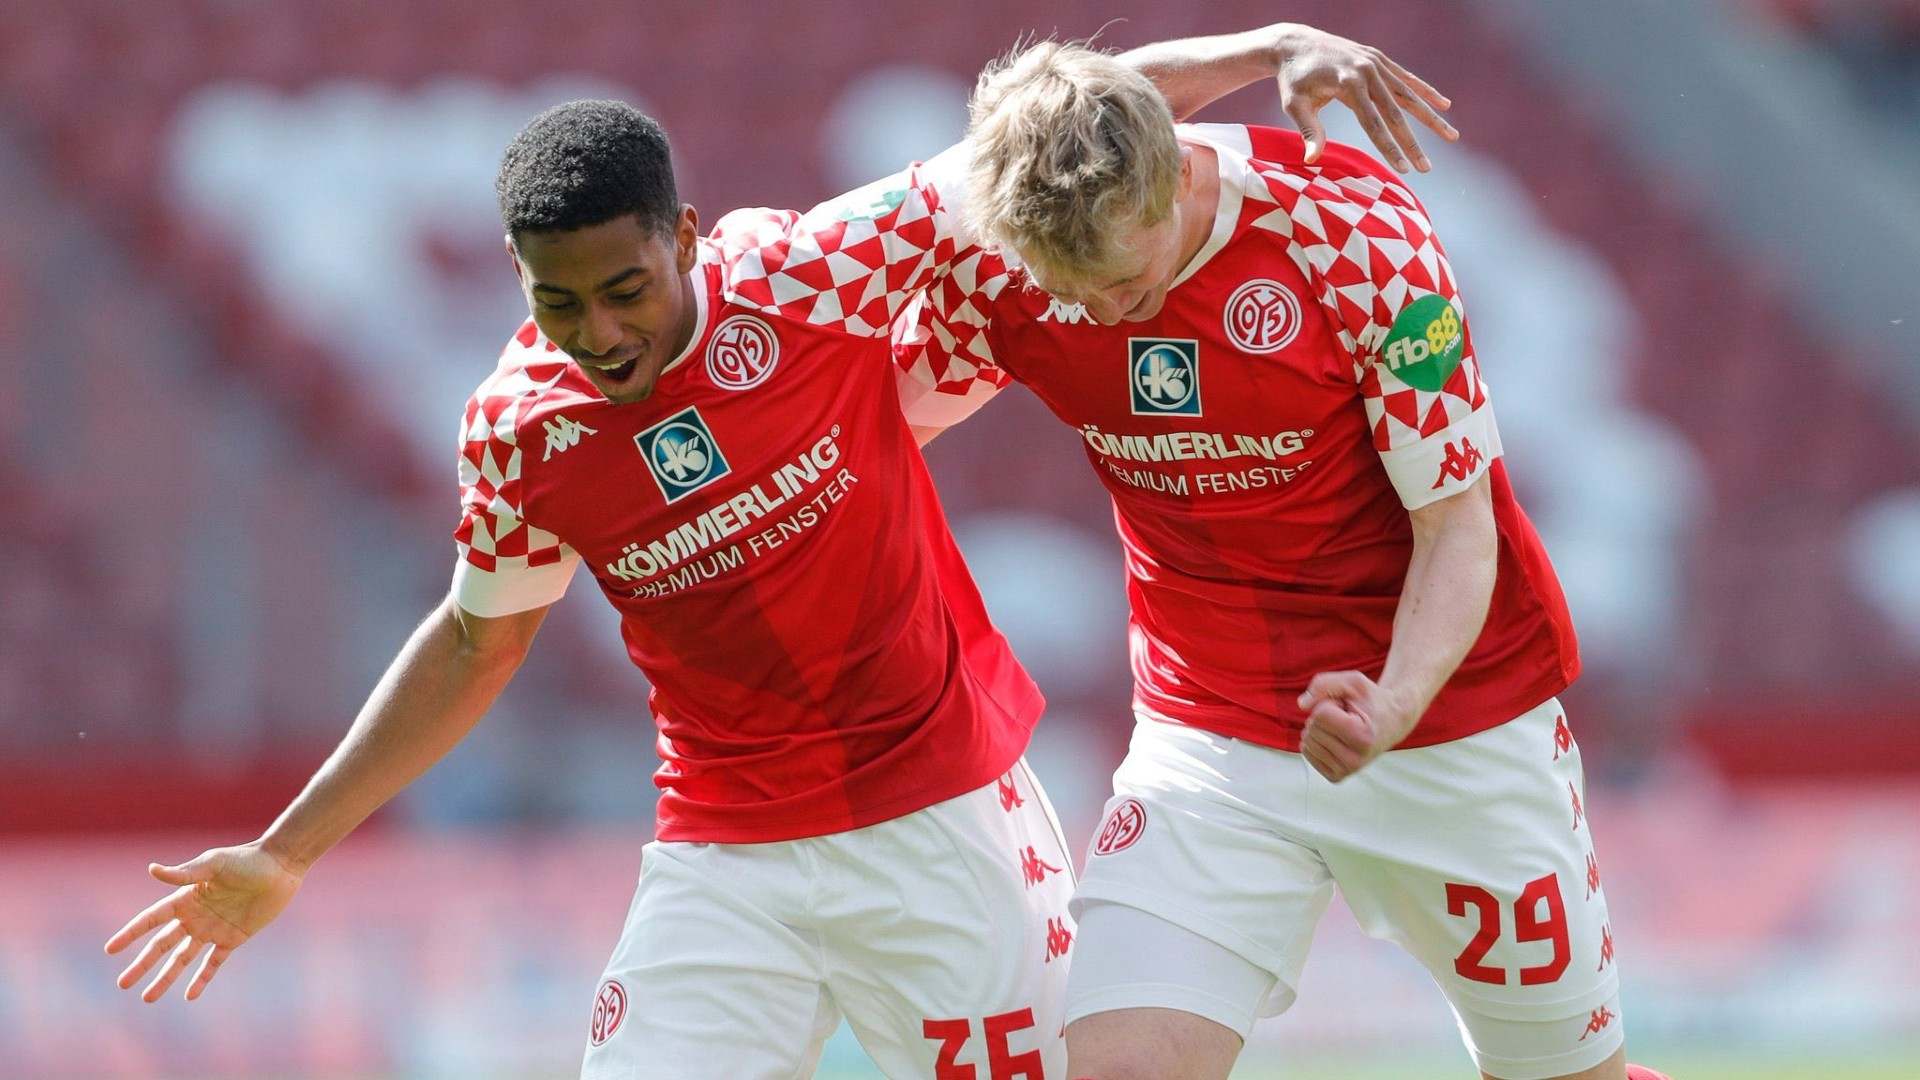 Mainz players celebrate a goal; Credit: Mainz 05 Twitter